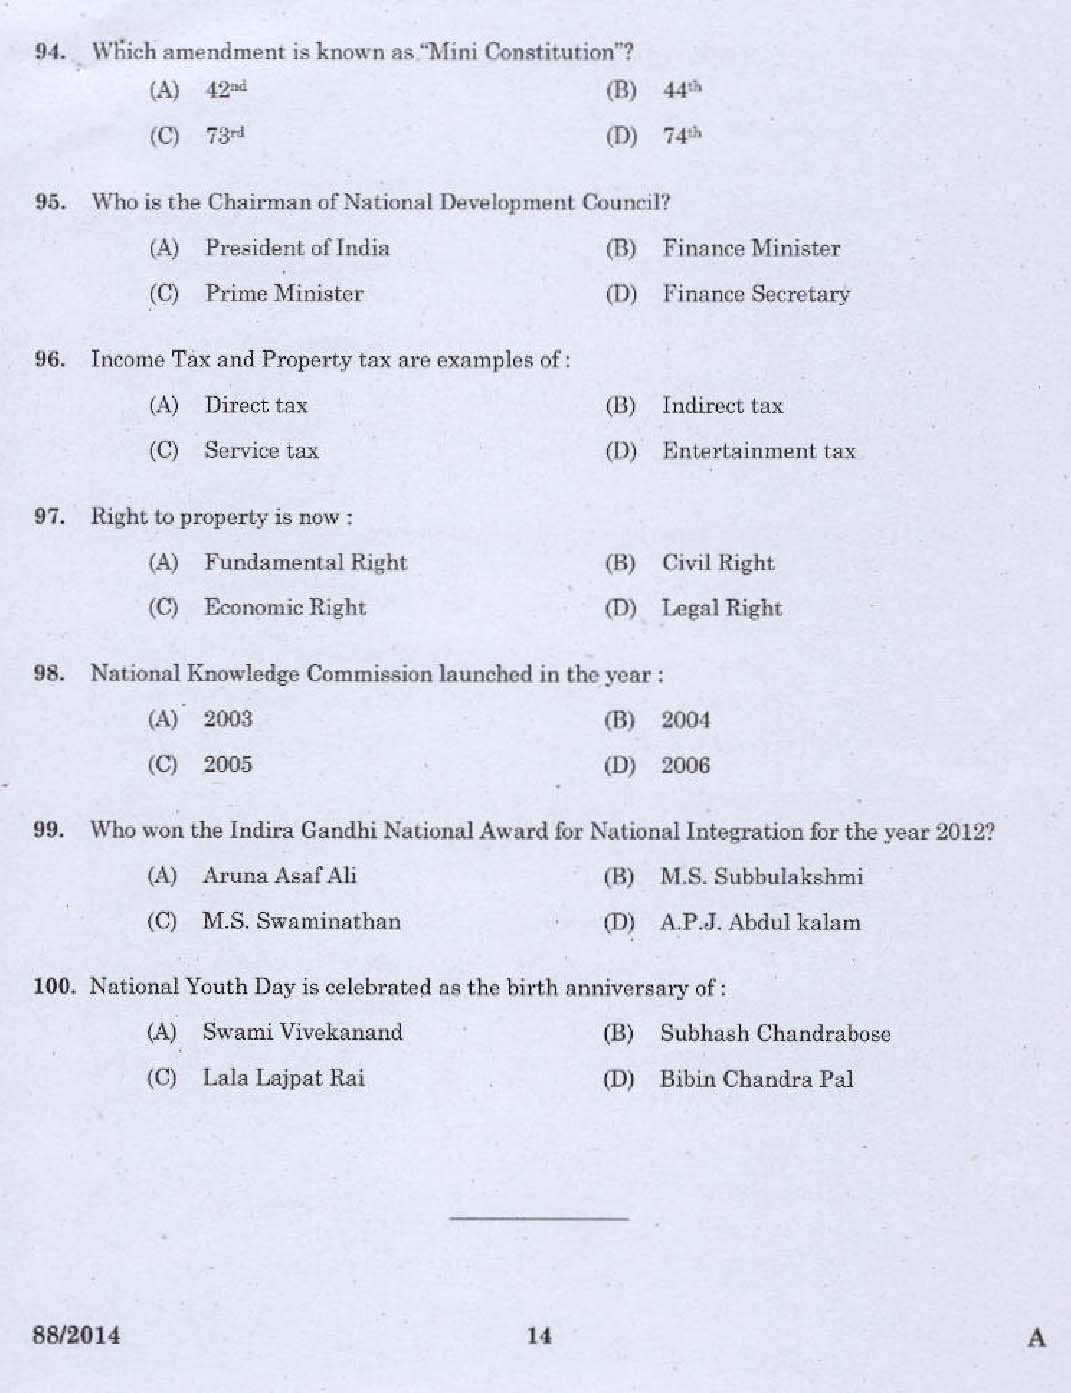 Kerala PSC Junior Instructor Exam Question Paper Code 882014 12